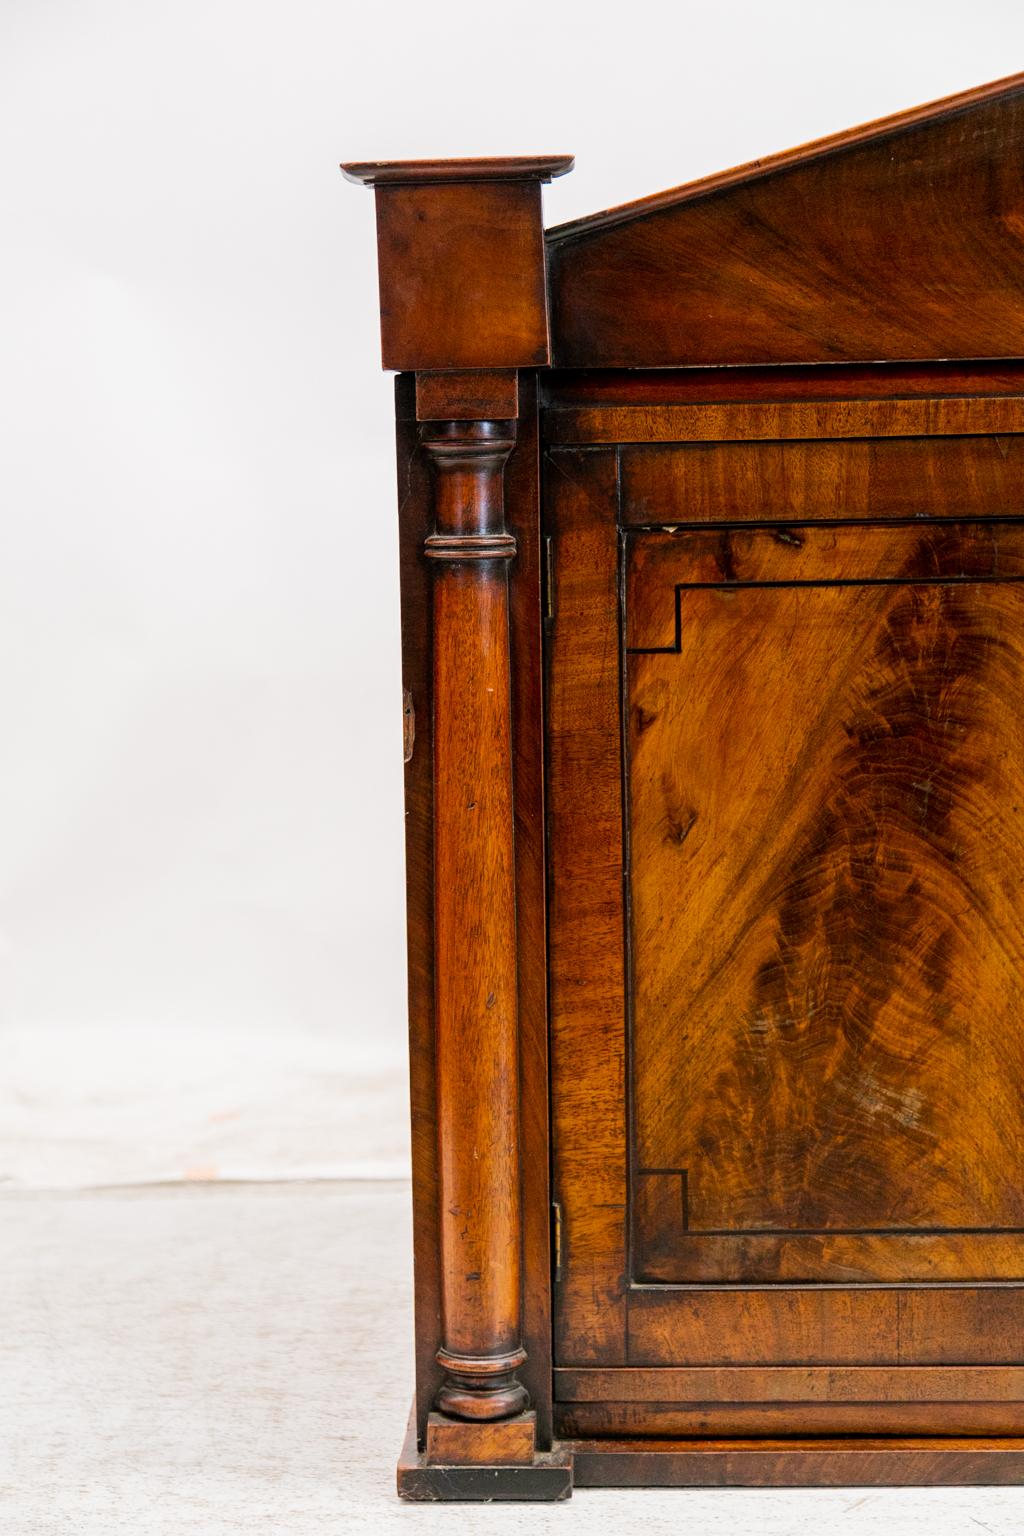 Die Türen dieses Regal-/Hängeschranks aus englischem Mahagoni sind mit Mahagoni umrahmt und haben vertiefte Paneele, die mit Ebenholzleisten ausgekleidet sind. Die Einlage aus Ebenholz umgibt das Mahagoni mit Flammenmaserung in Buchform. Die